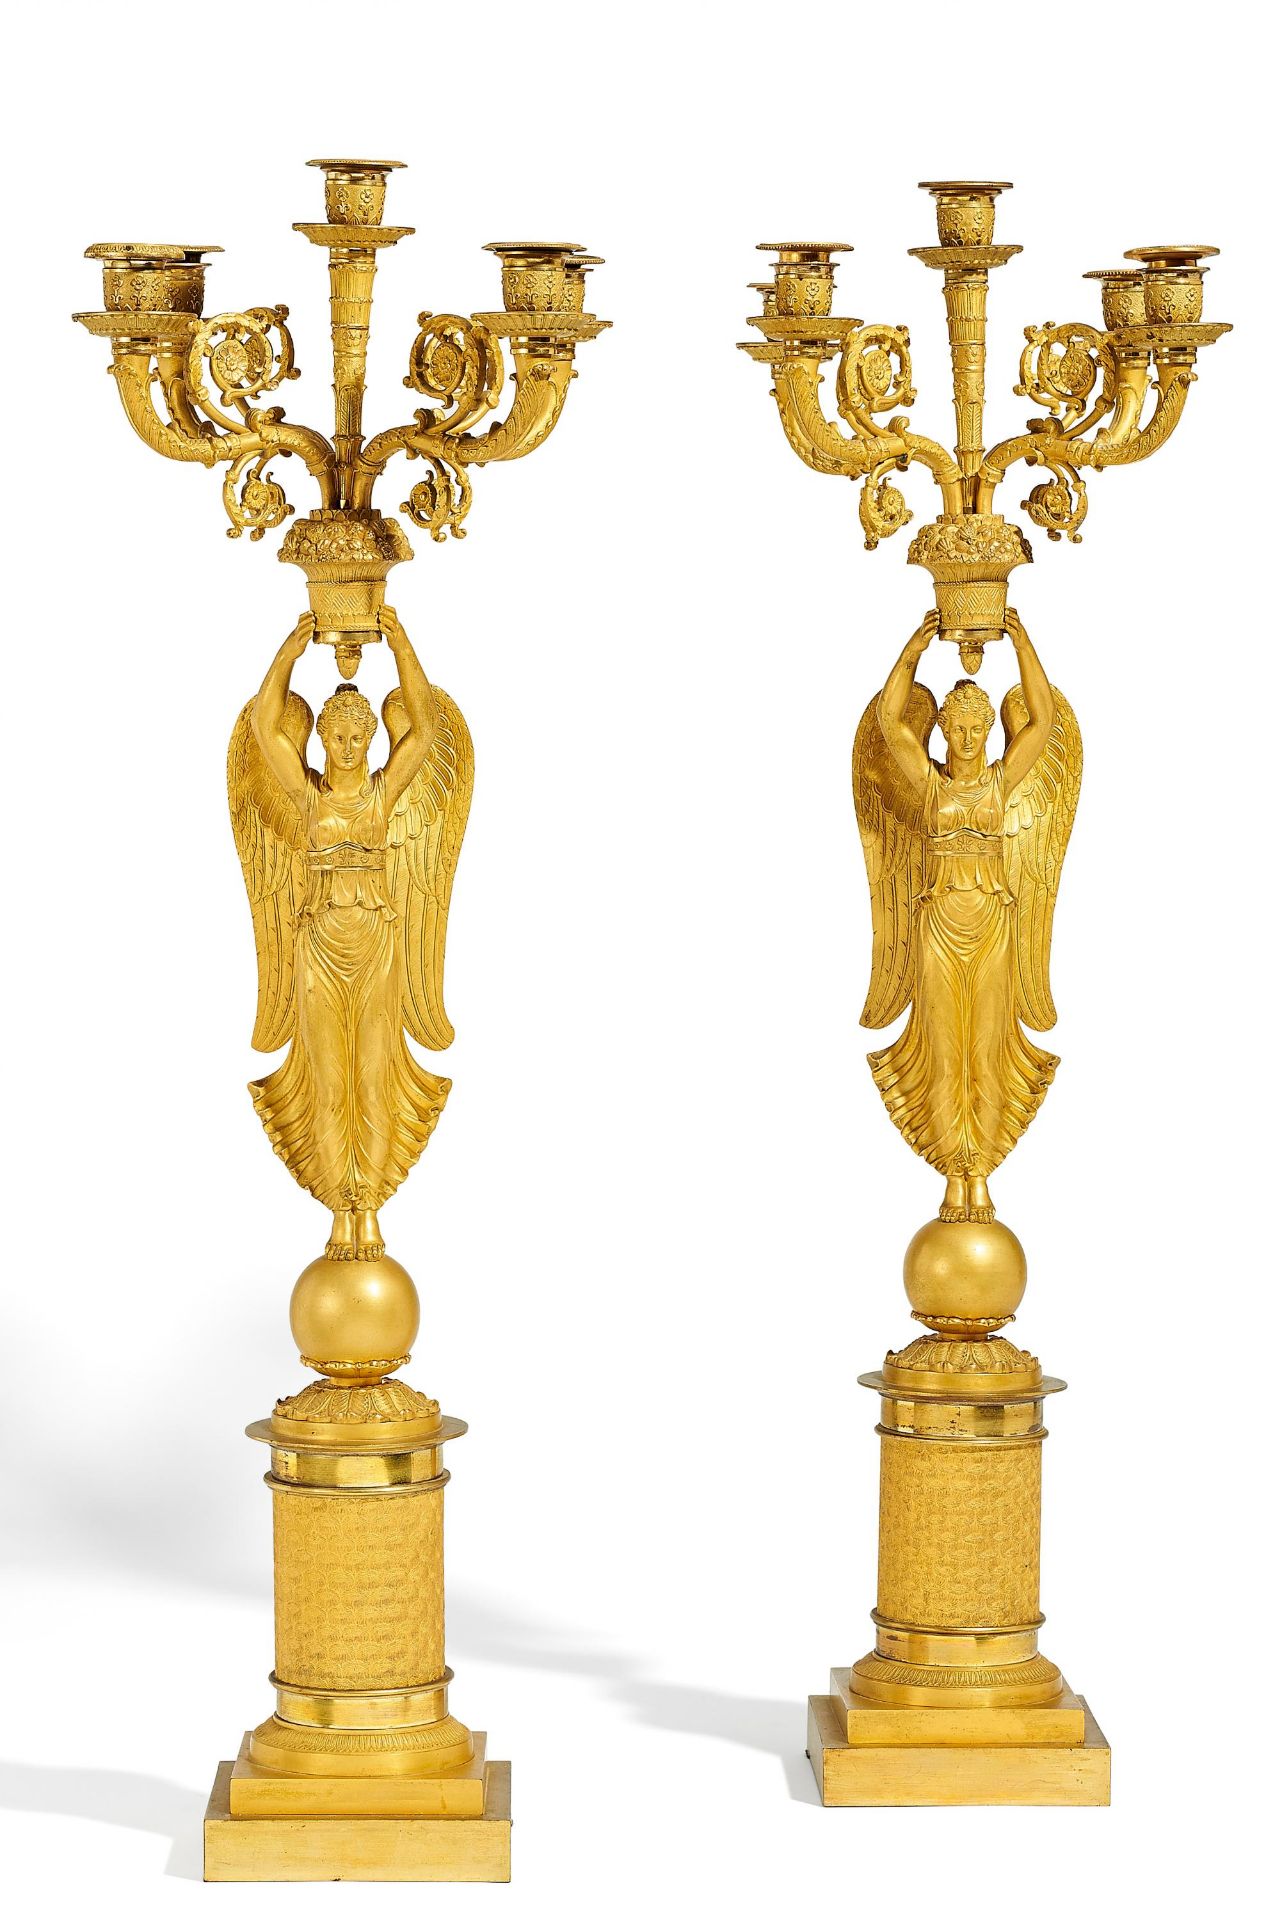 PAAR GROßE GIRANDOLEN MIT VIKTORIEN. Paris. Um 1820-30. Vergoldete Bronze. Gestufte Plinthe mit